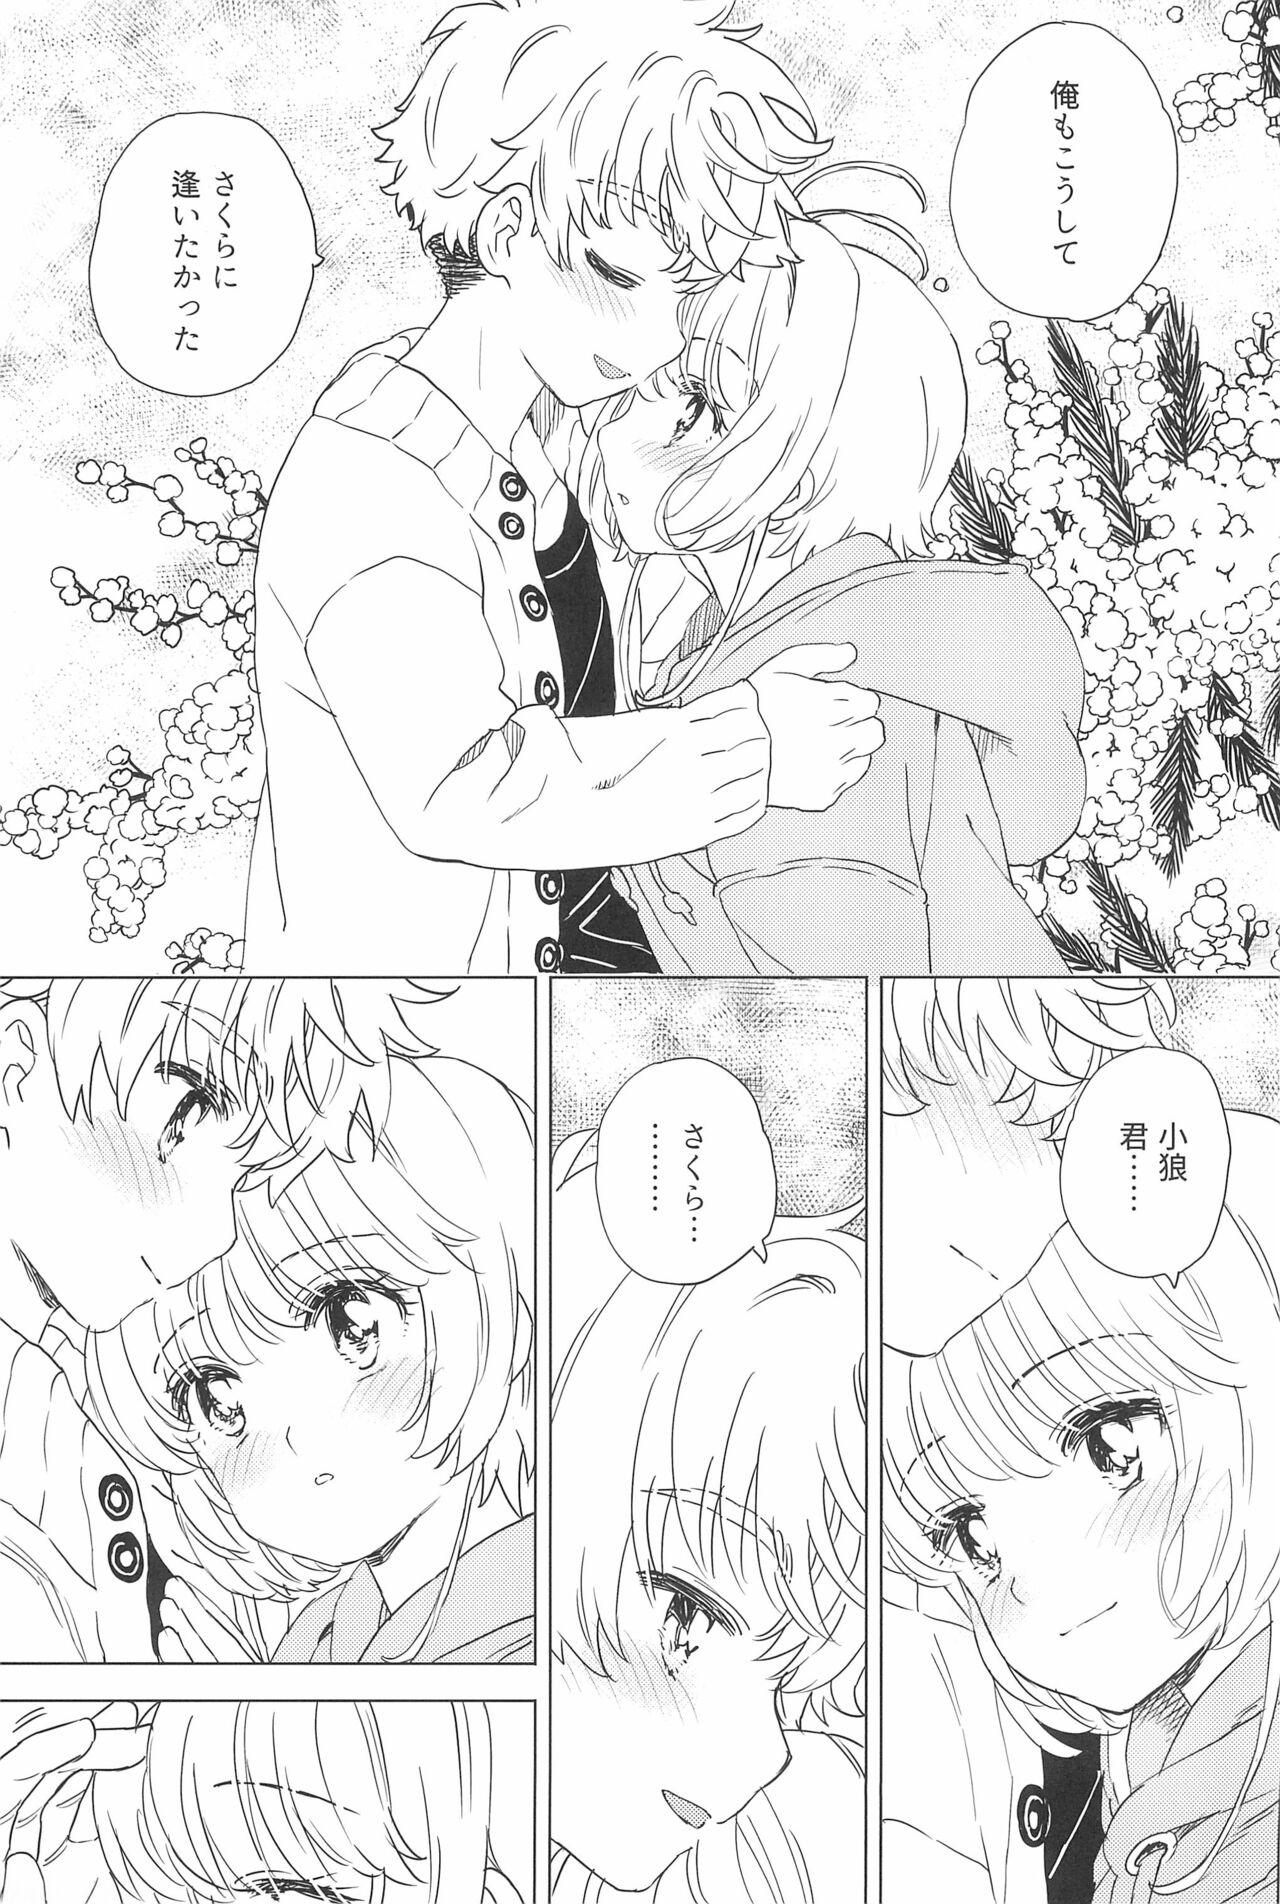 Bra Sakura to Syaoran no Ouchi Date - Cardcaptor sakura Sixtynine - Page 9